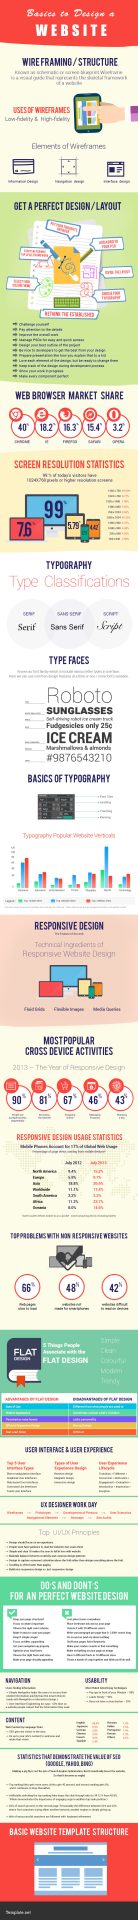 Basics-to-Design-a-Website-Infogrpahic-final